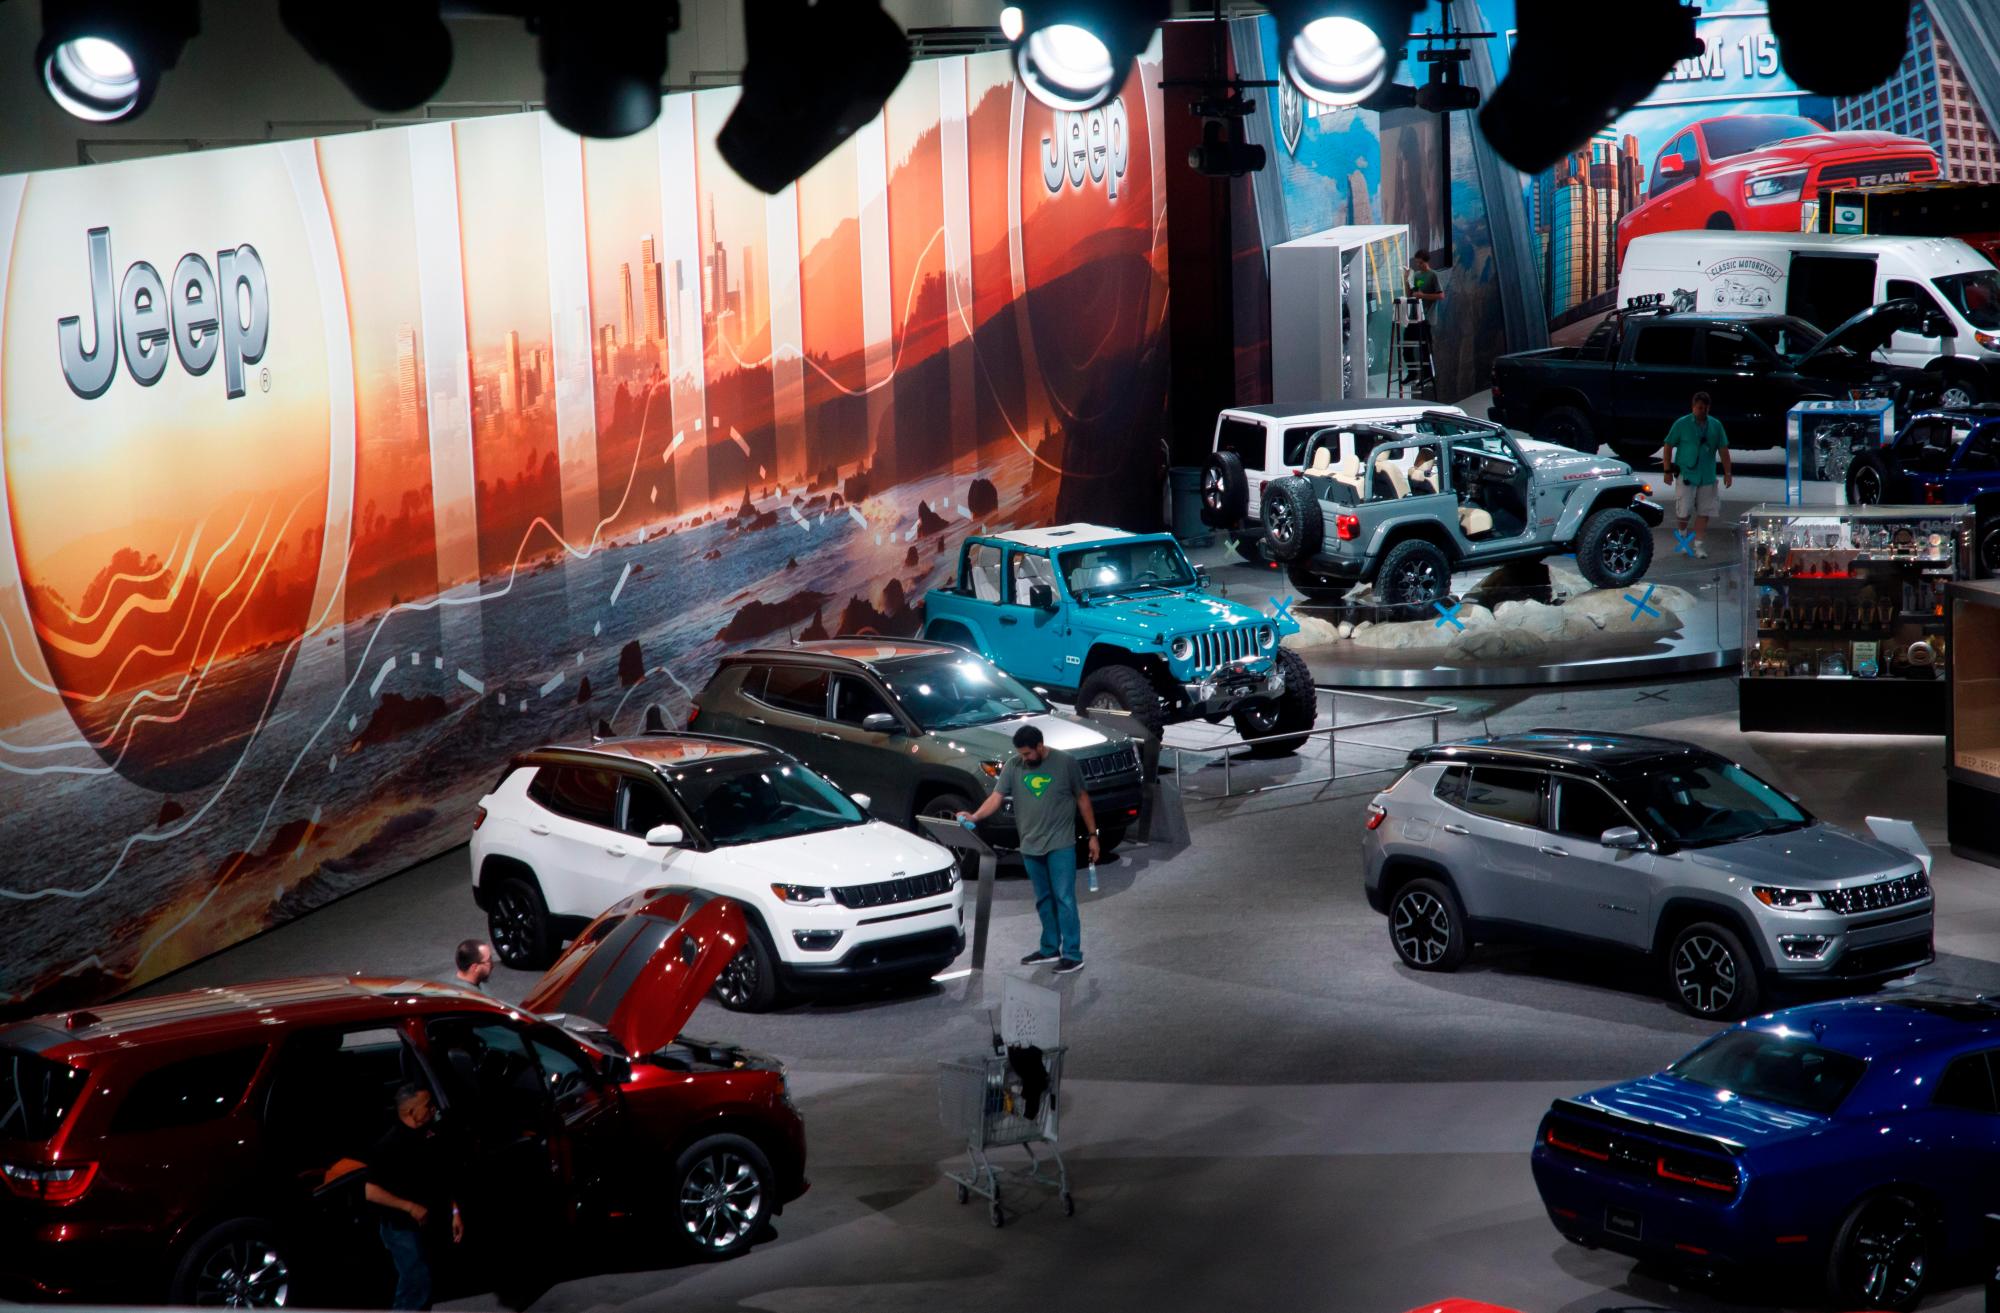 Los trabajadores preparan la sala de exposiciones hoy antes del Auto Show Automobility LA en Los Ángeles, California (EE. UU.). El espectáculo contará con más de 60 lanzamientos de vehículos.